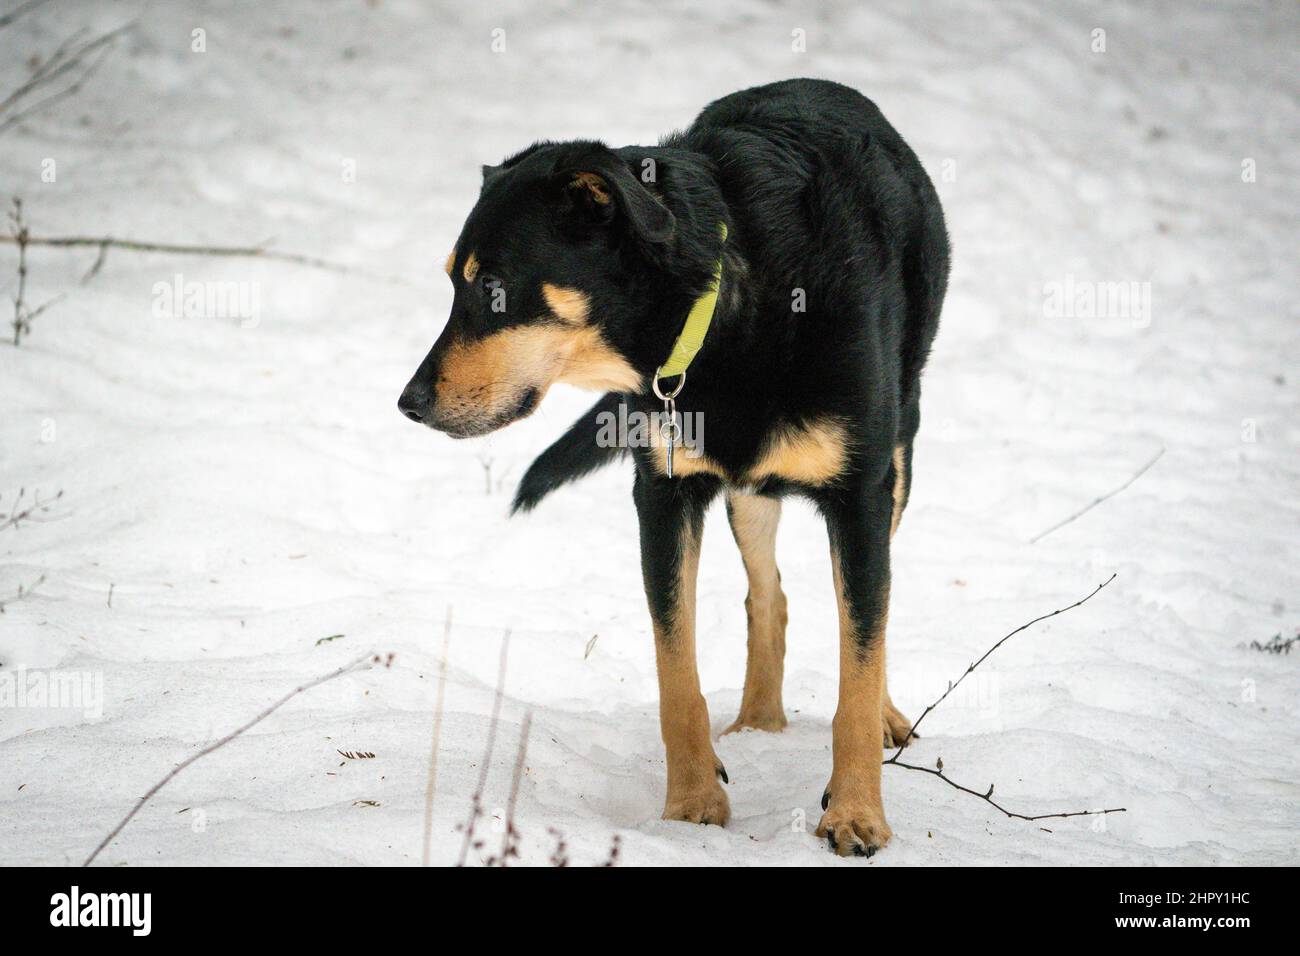 Ich gehe gerne mit meinem Hund auf Winterwanderwegen in der Nähe meines Hauses im ländlichen Door County Wisconsin. Es ist eine gute Winteraktivität für uns beide. Stockfoto